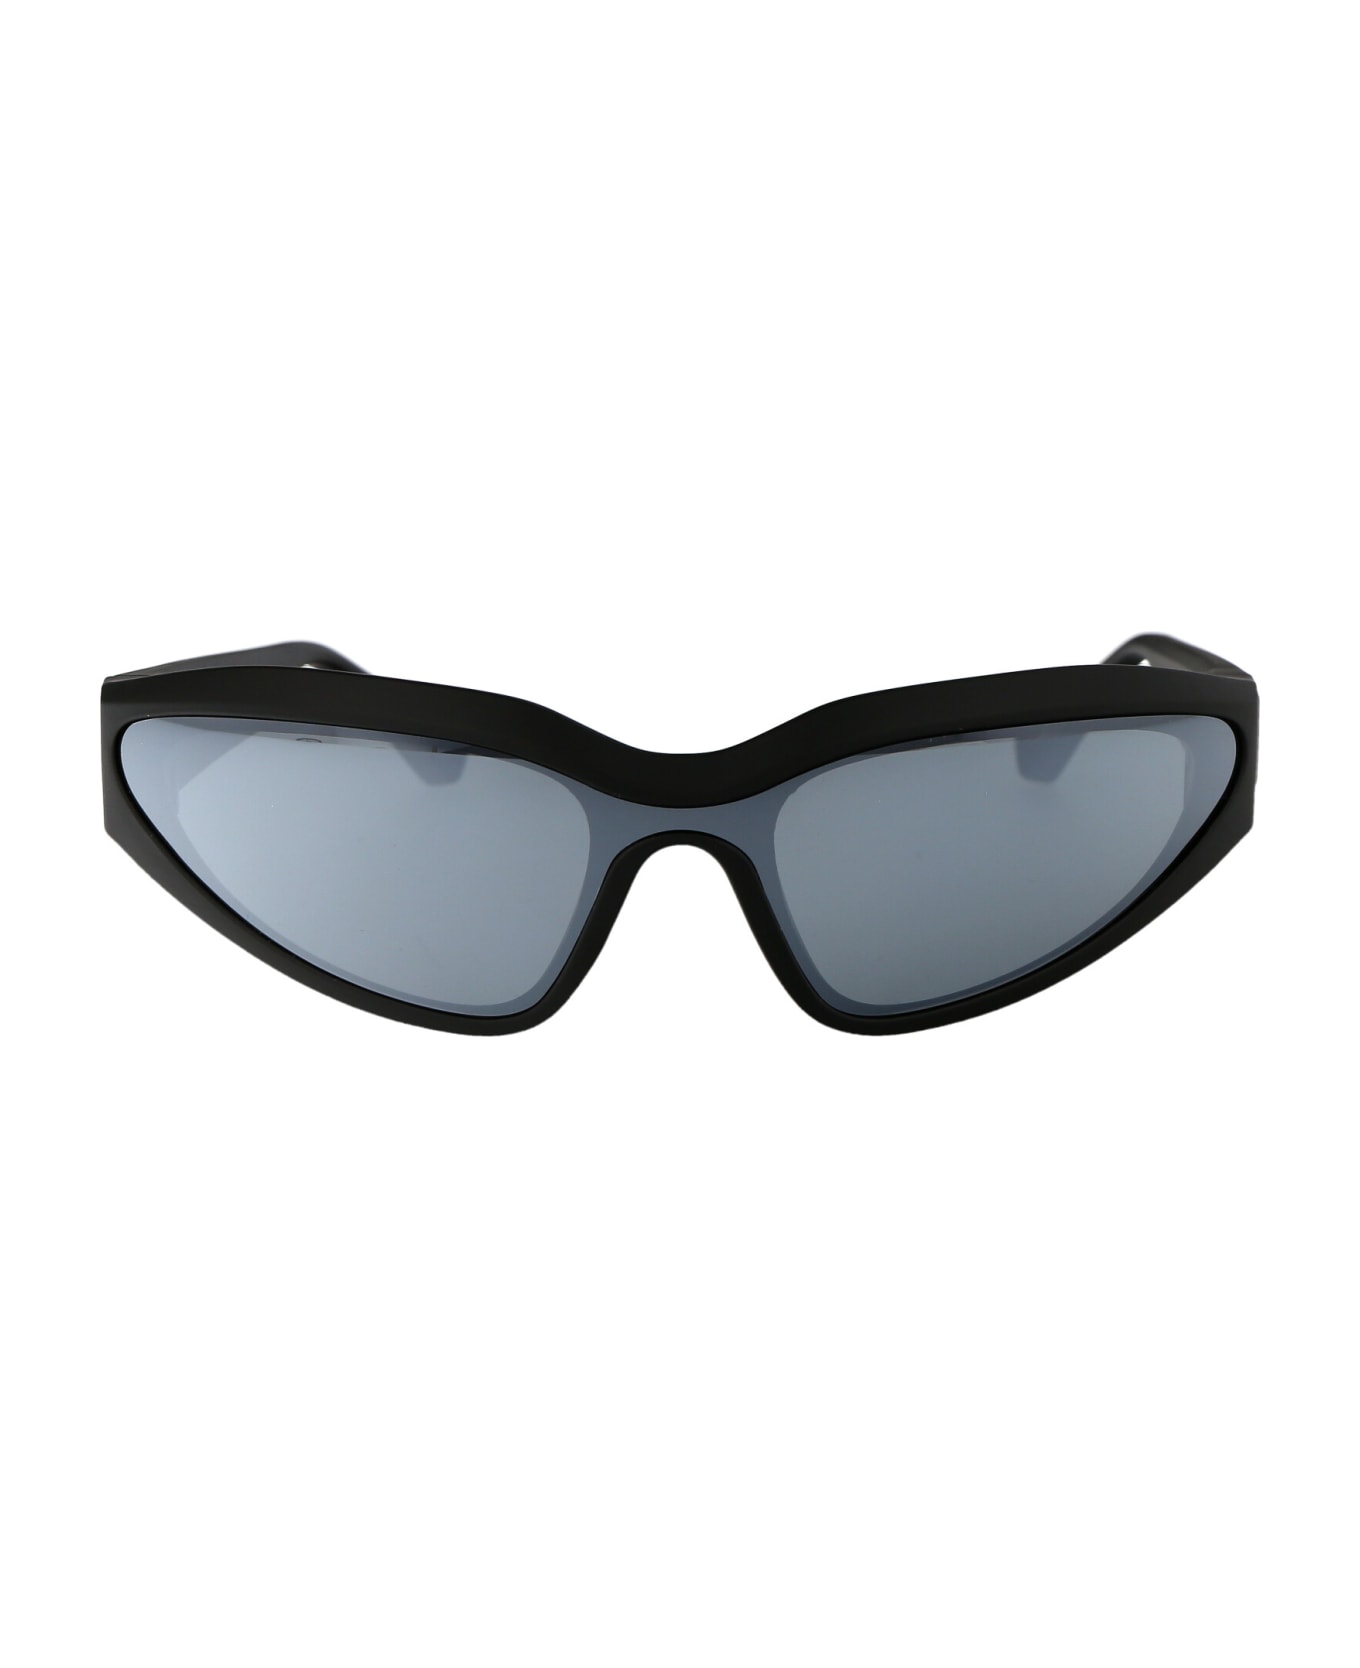 Karl Lagerfeld Kl6128s Sunglasses - 002 BLACK